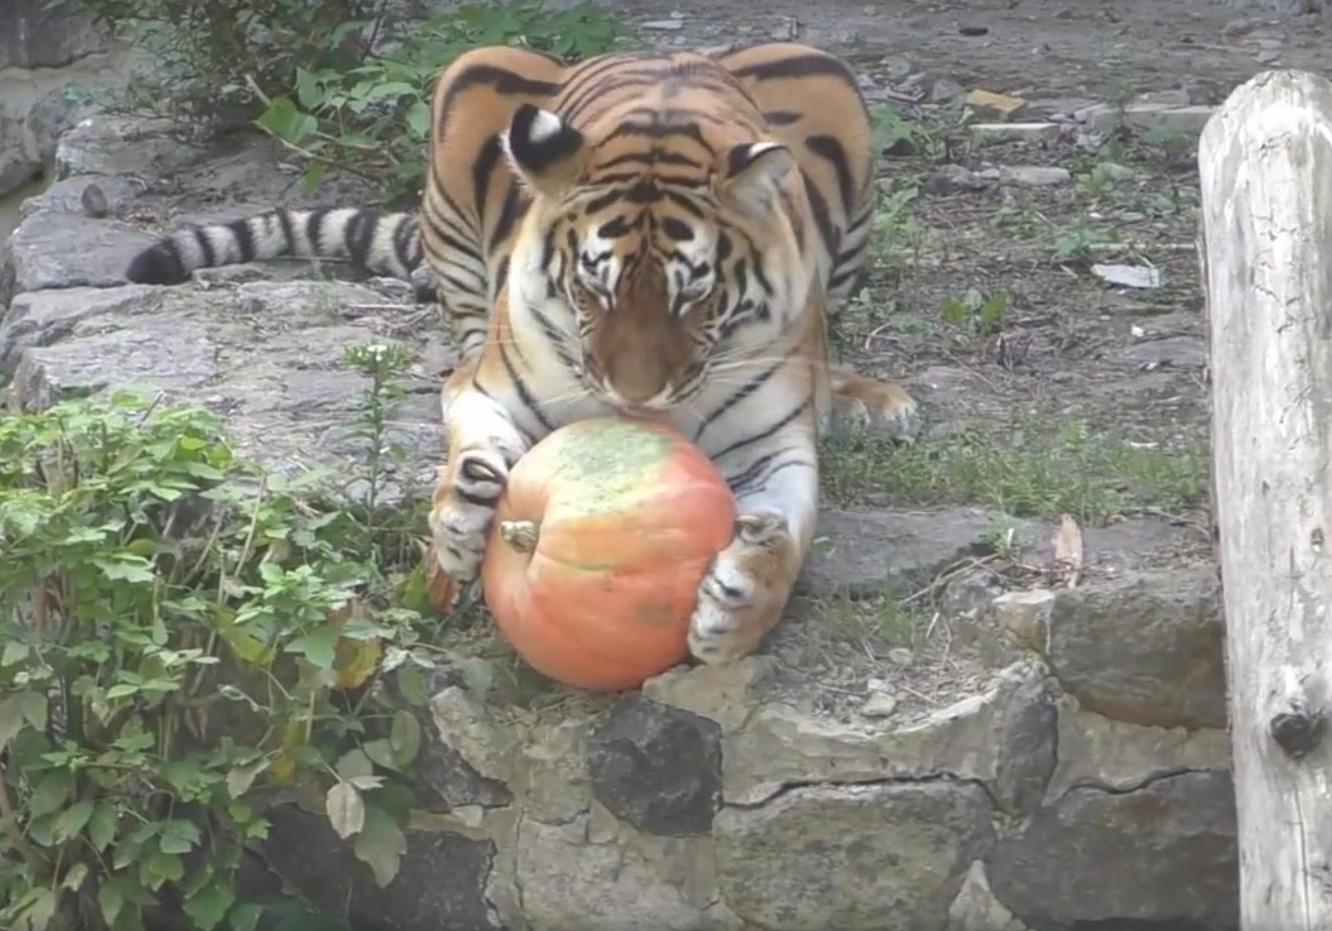 Новость - События - Видео дня: киевский зоопарк показал тигра, который играется с тыквой